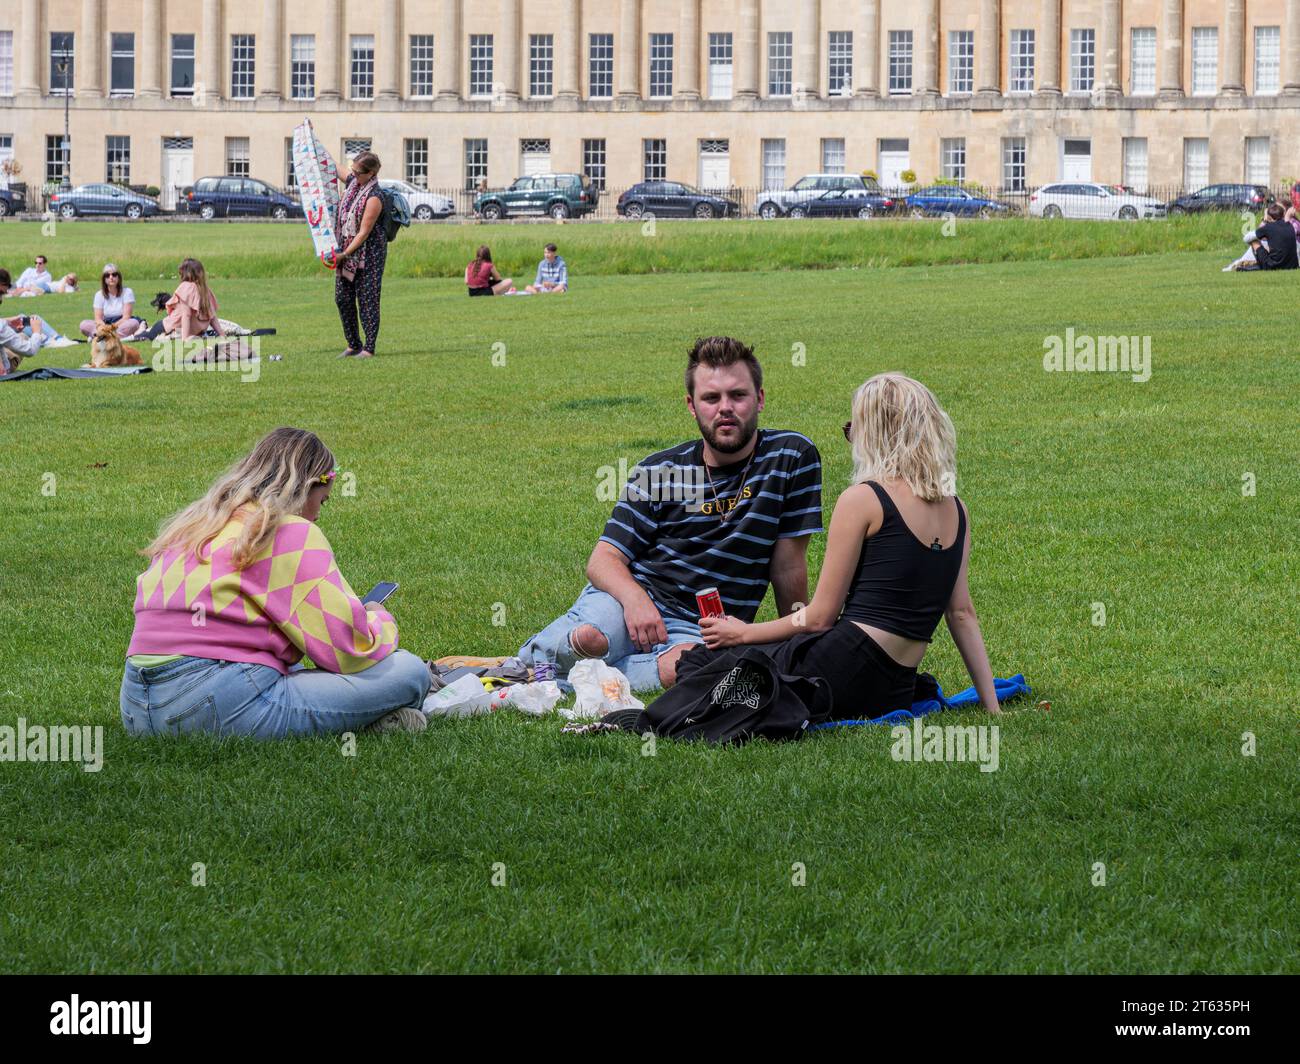 people enjoying the sunshine by the royal Crescent, Bath, Somerset, England, UK Stock Photo